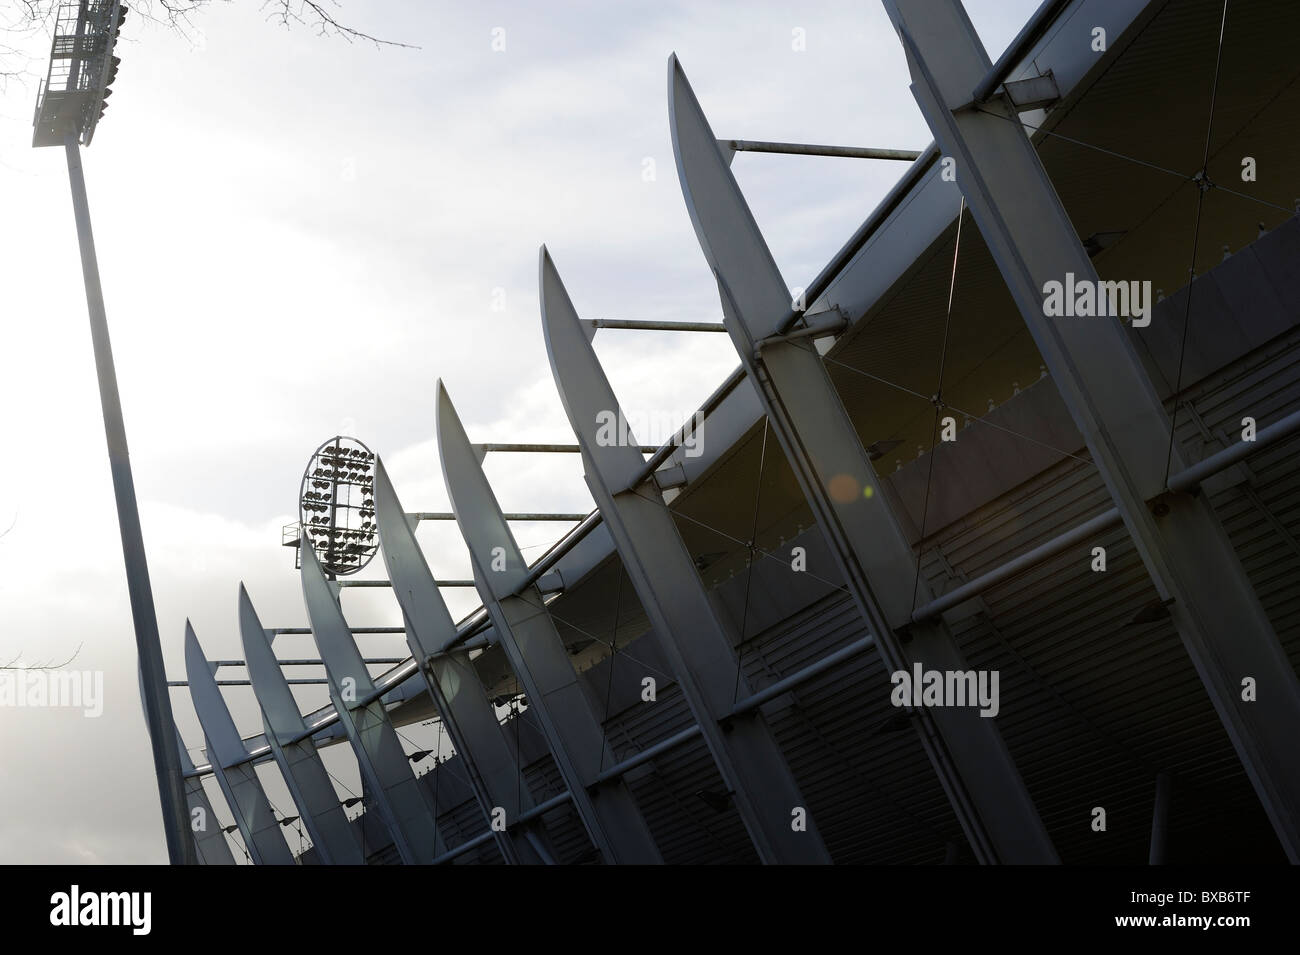 Stock photo of the Nottingham Trent Bridge cricket ground in West Bridgford, Nottingham. Stock Photo